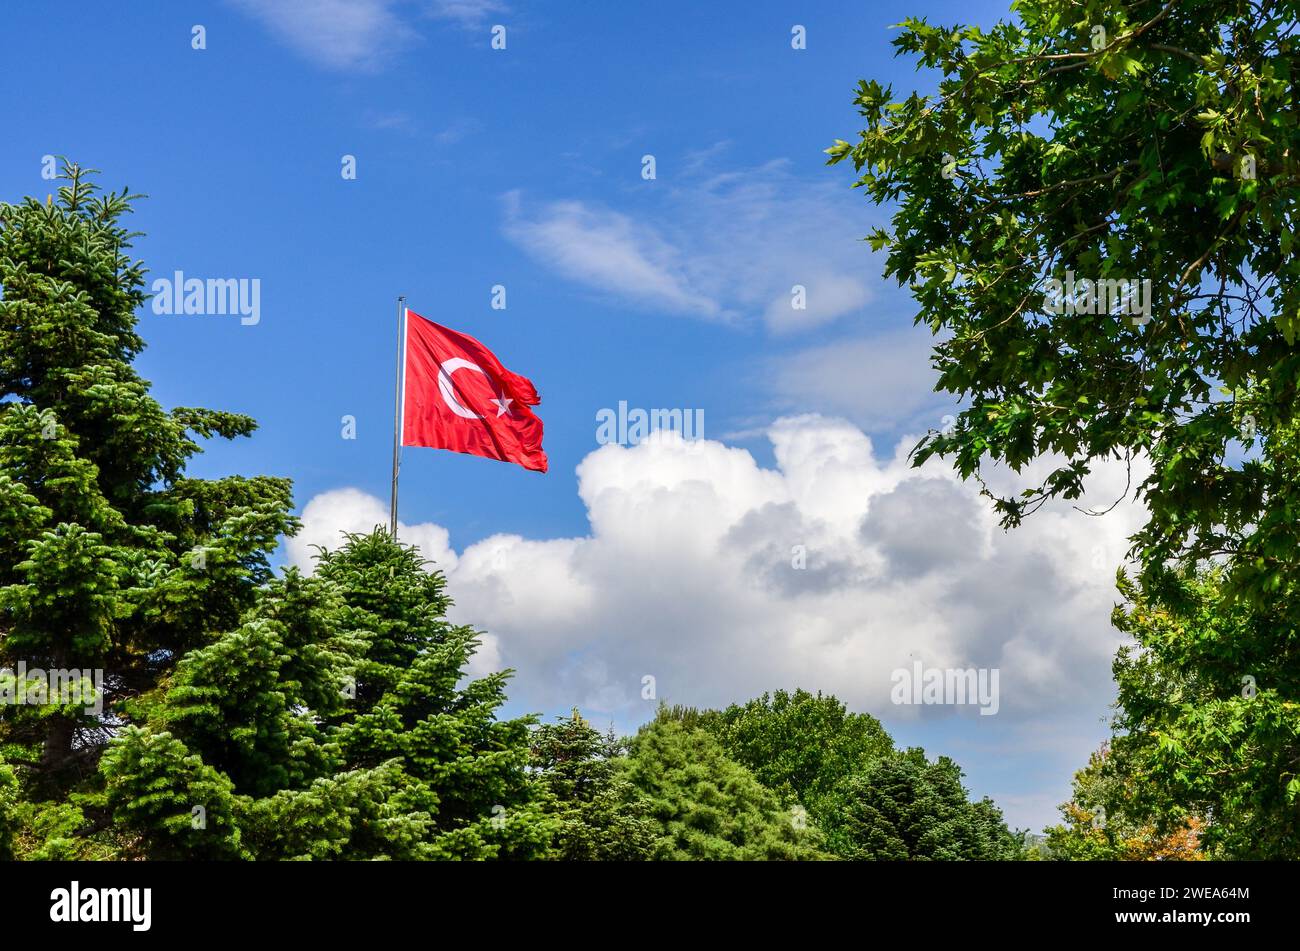 Türkische Flagge winkt im Wind vor einem blauen Himmel mit Wolken, umgeben von grünen, üppigen Bäumen Stockfoto